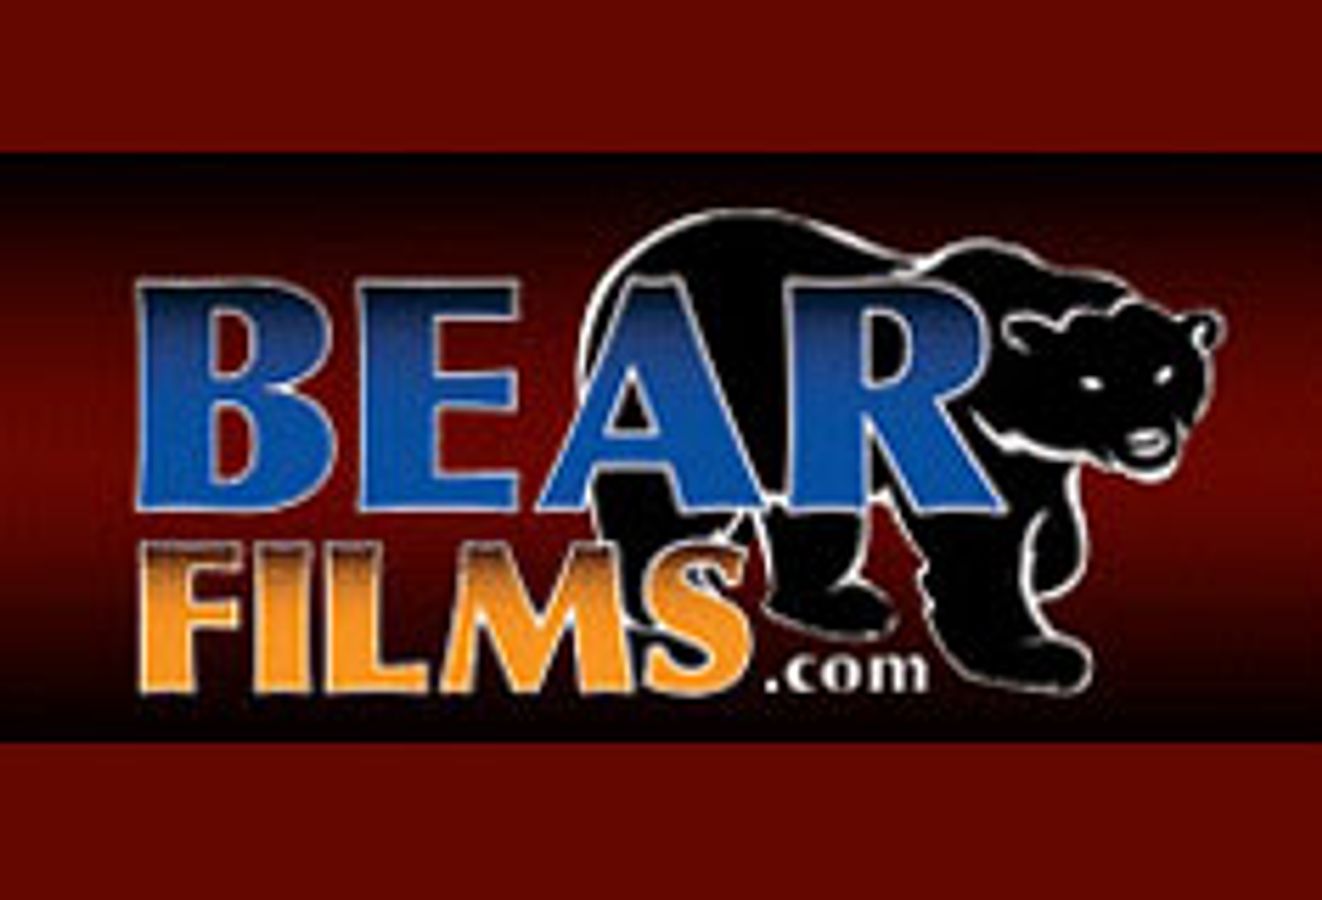 BearFilms.com